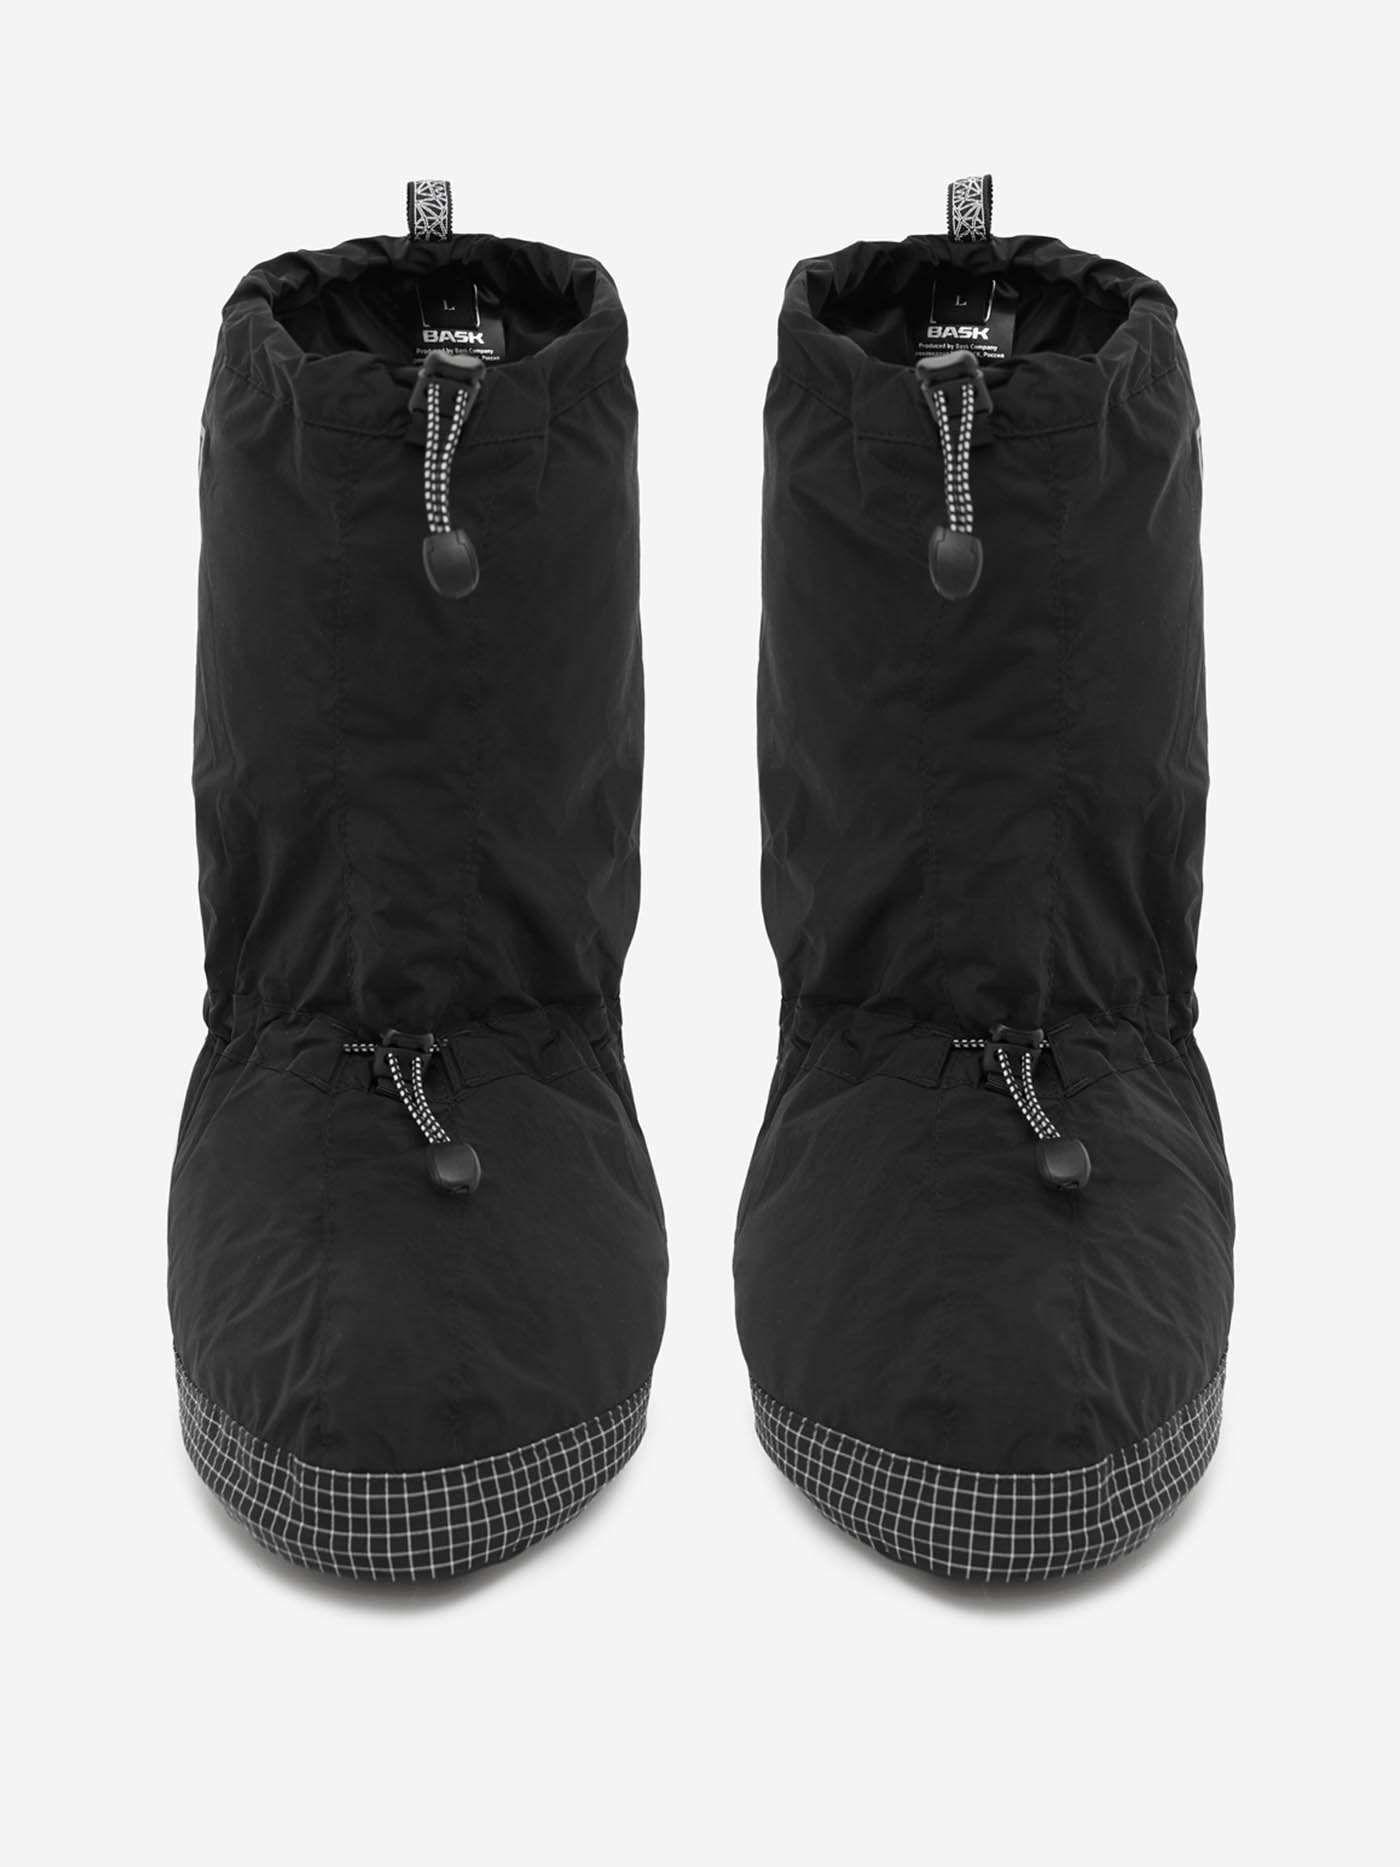 Носки BASK, размер S, цвет черный 21203-9009-S Tundra foot - фото 2